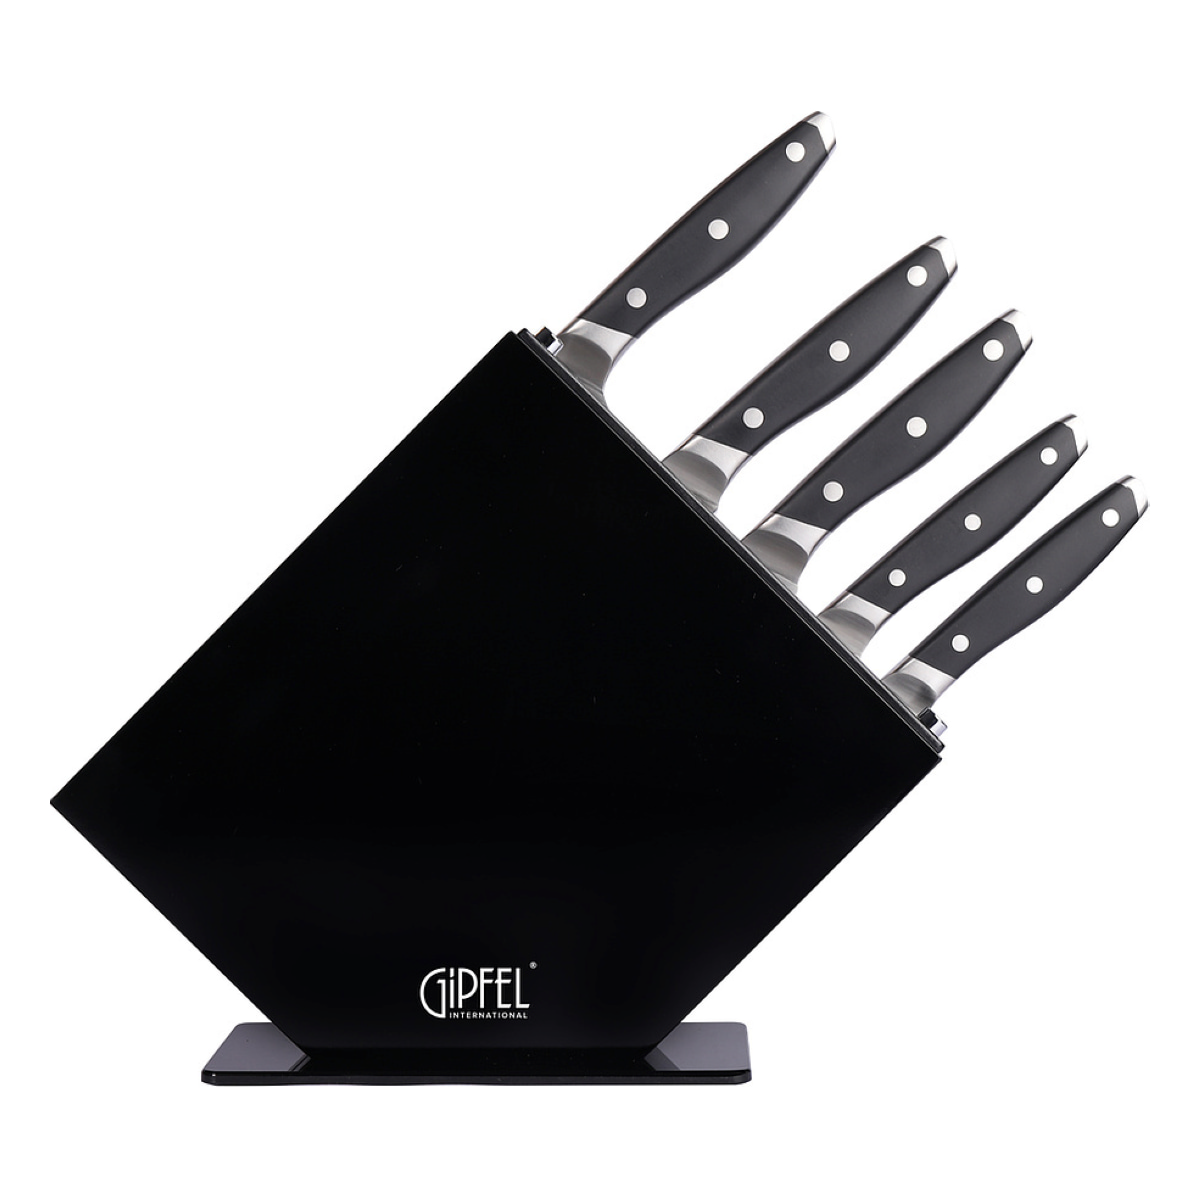 набор кухонных инструментов gipfel compact 9941 Набор кухонных ножей Gipfel 51580 6 предметов